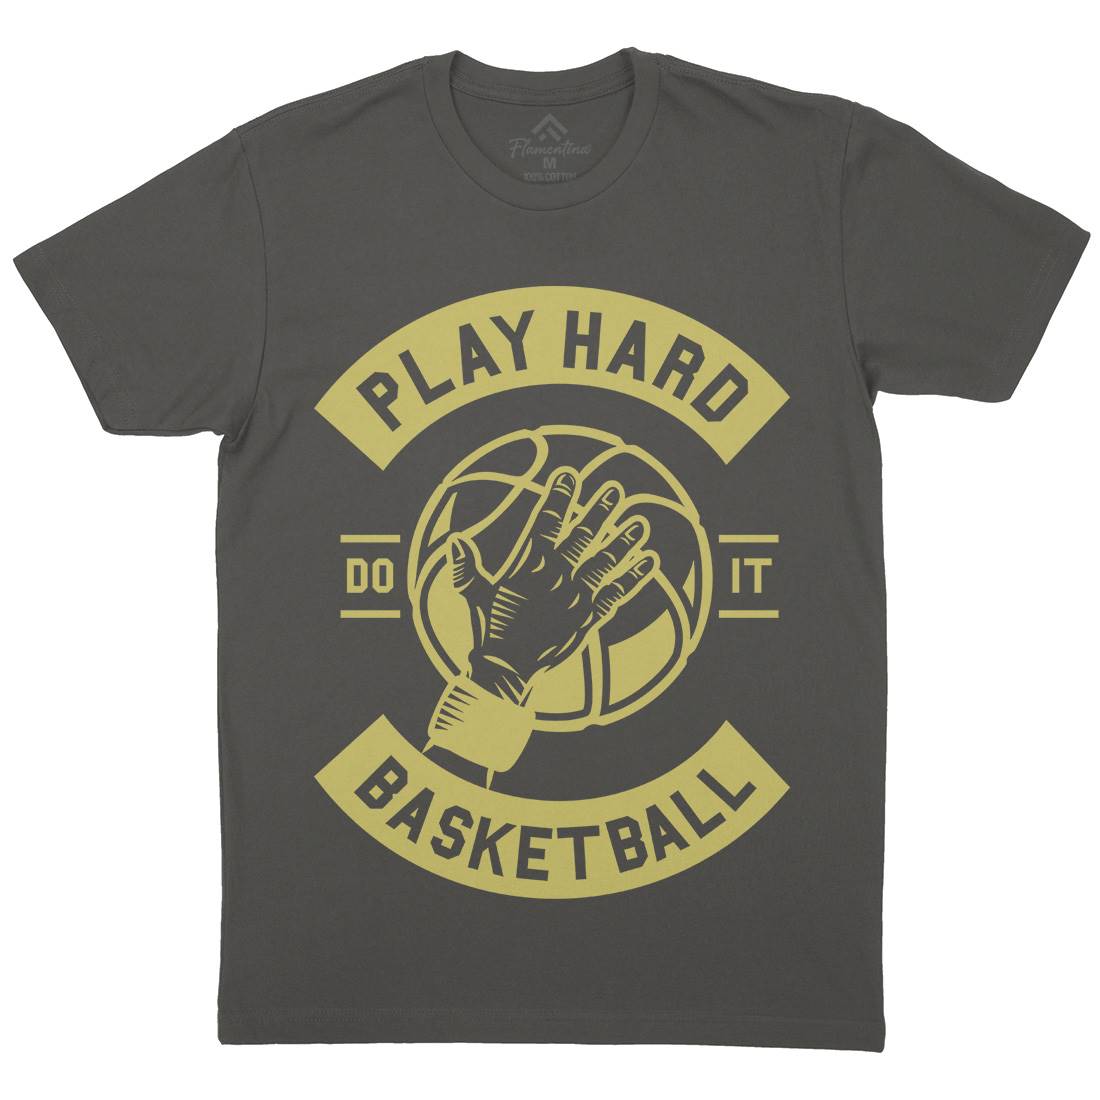 Play Hard Basketball Mens Crew Neck T-Shirt Sport A261